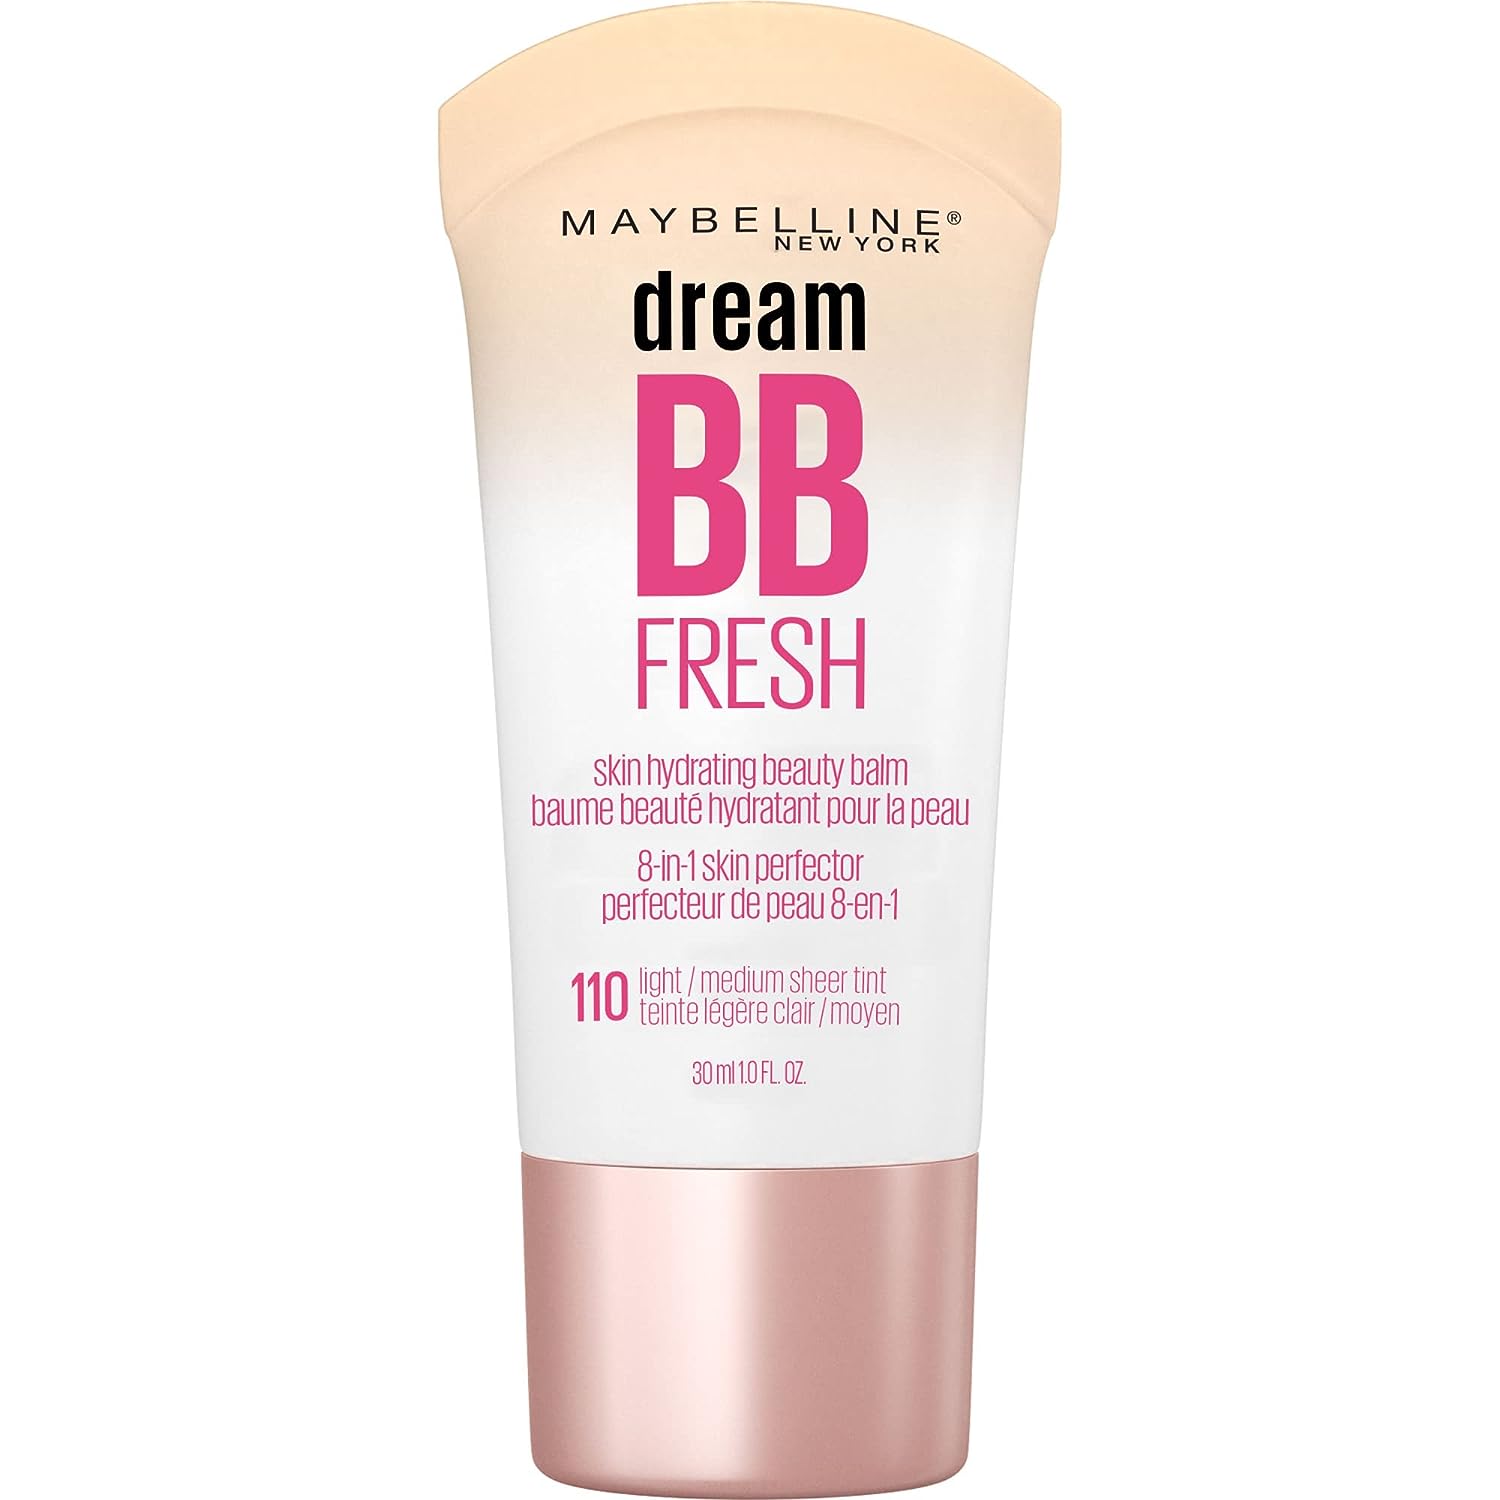 Maybelline Dream BB Fresh Skin Hydrating BB Cream - 1.0oz (30ml)